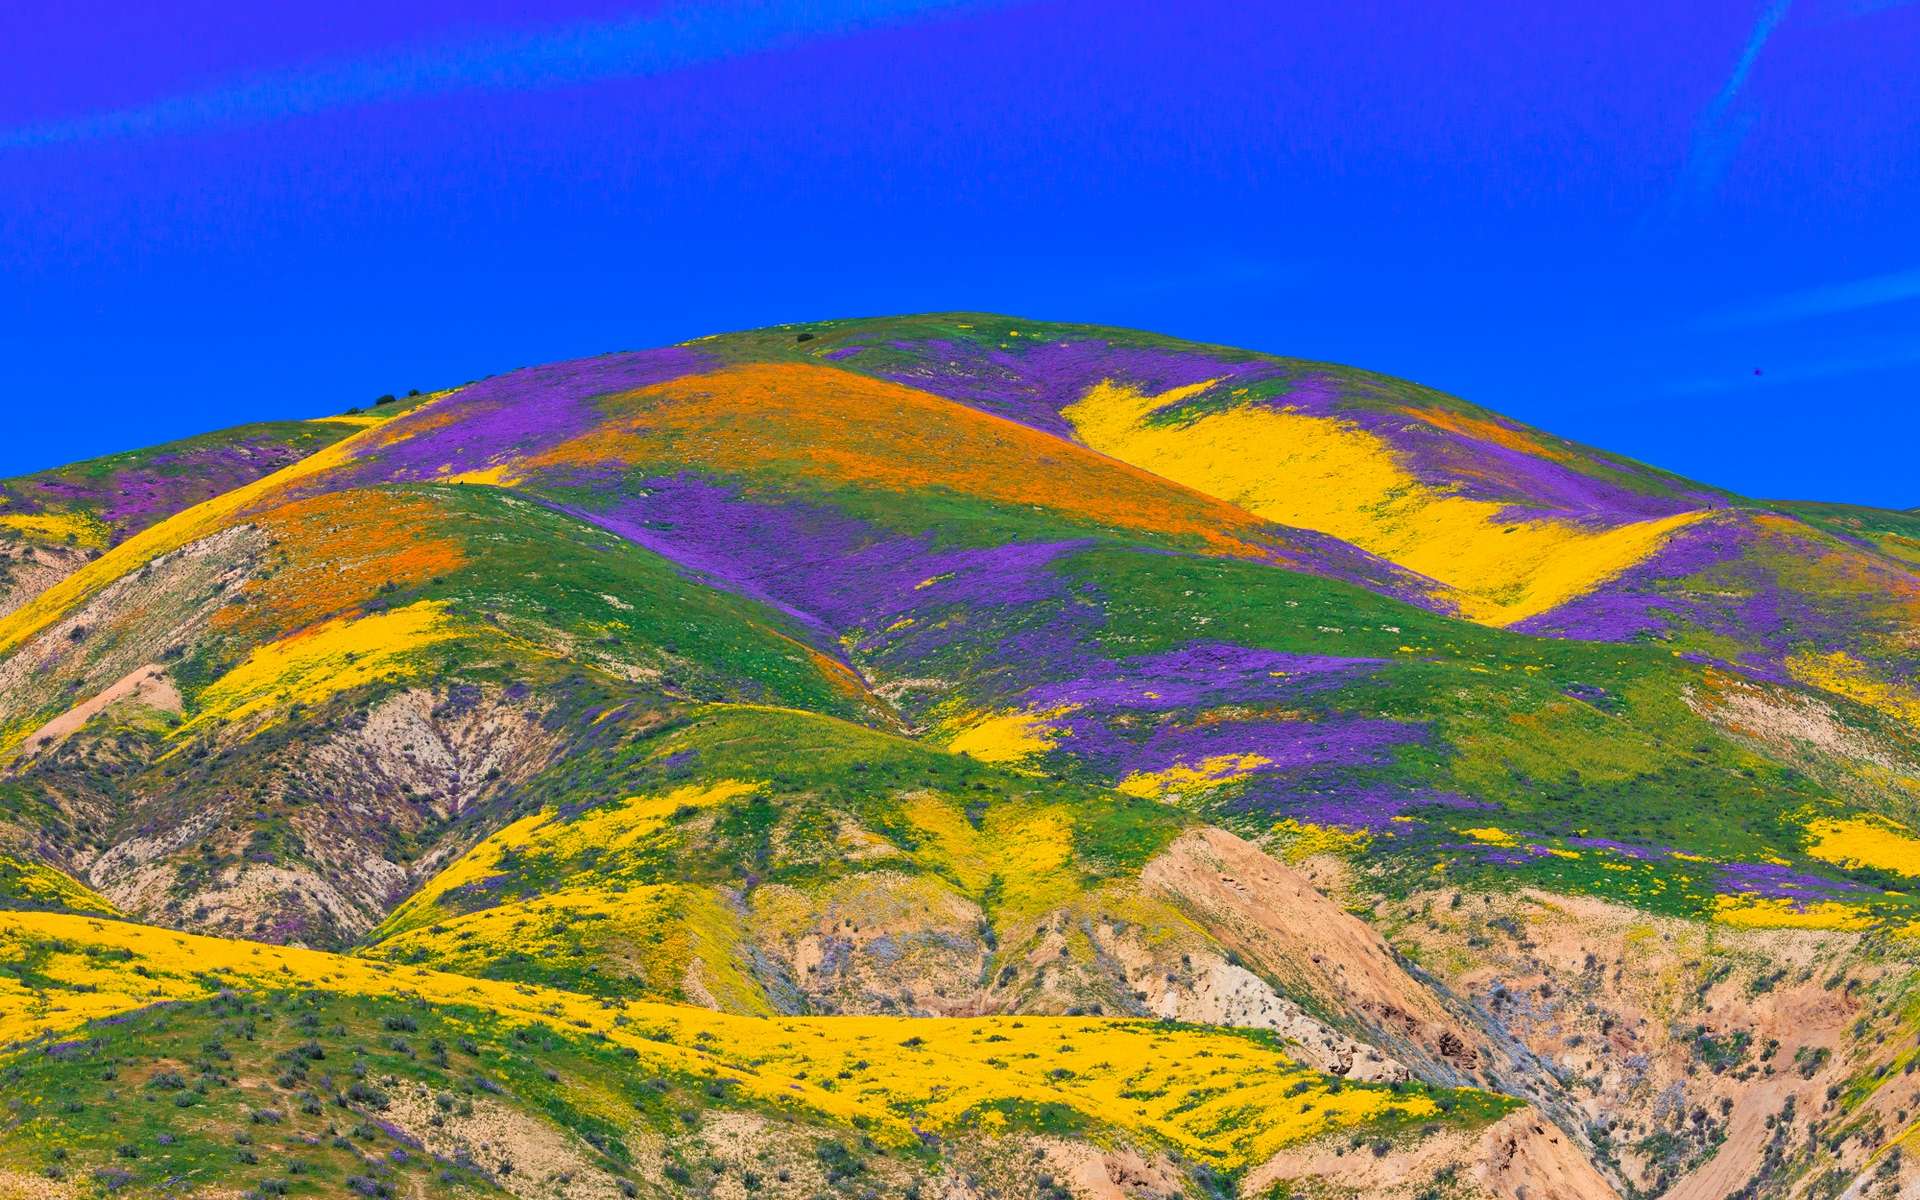 Spectacle rare et merveilleux des tapis de fleurs dans les déserts de Californie et de l'Arizona